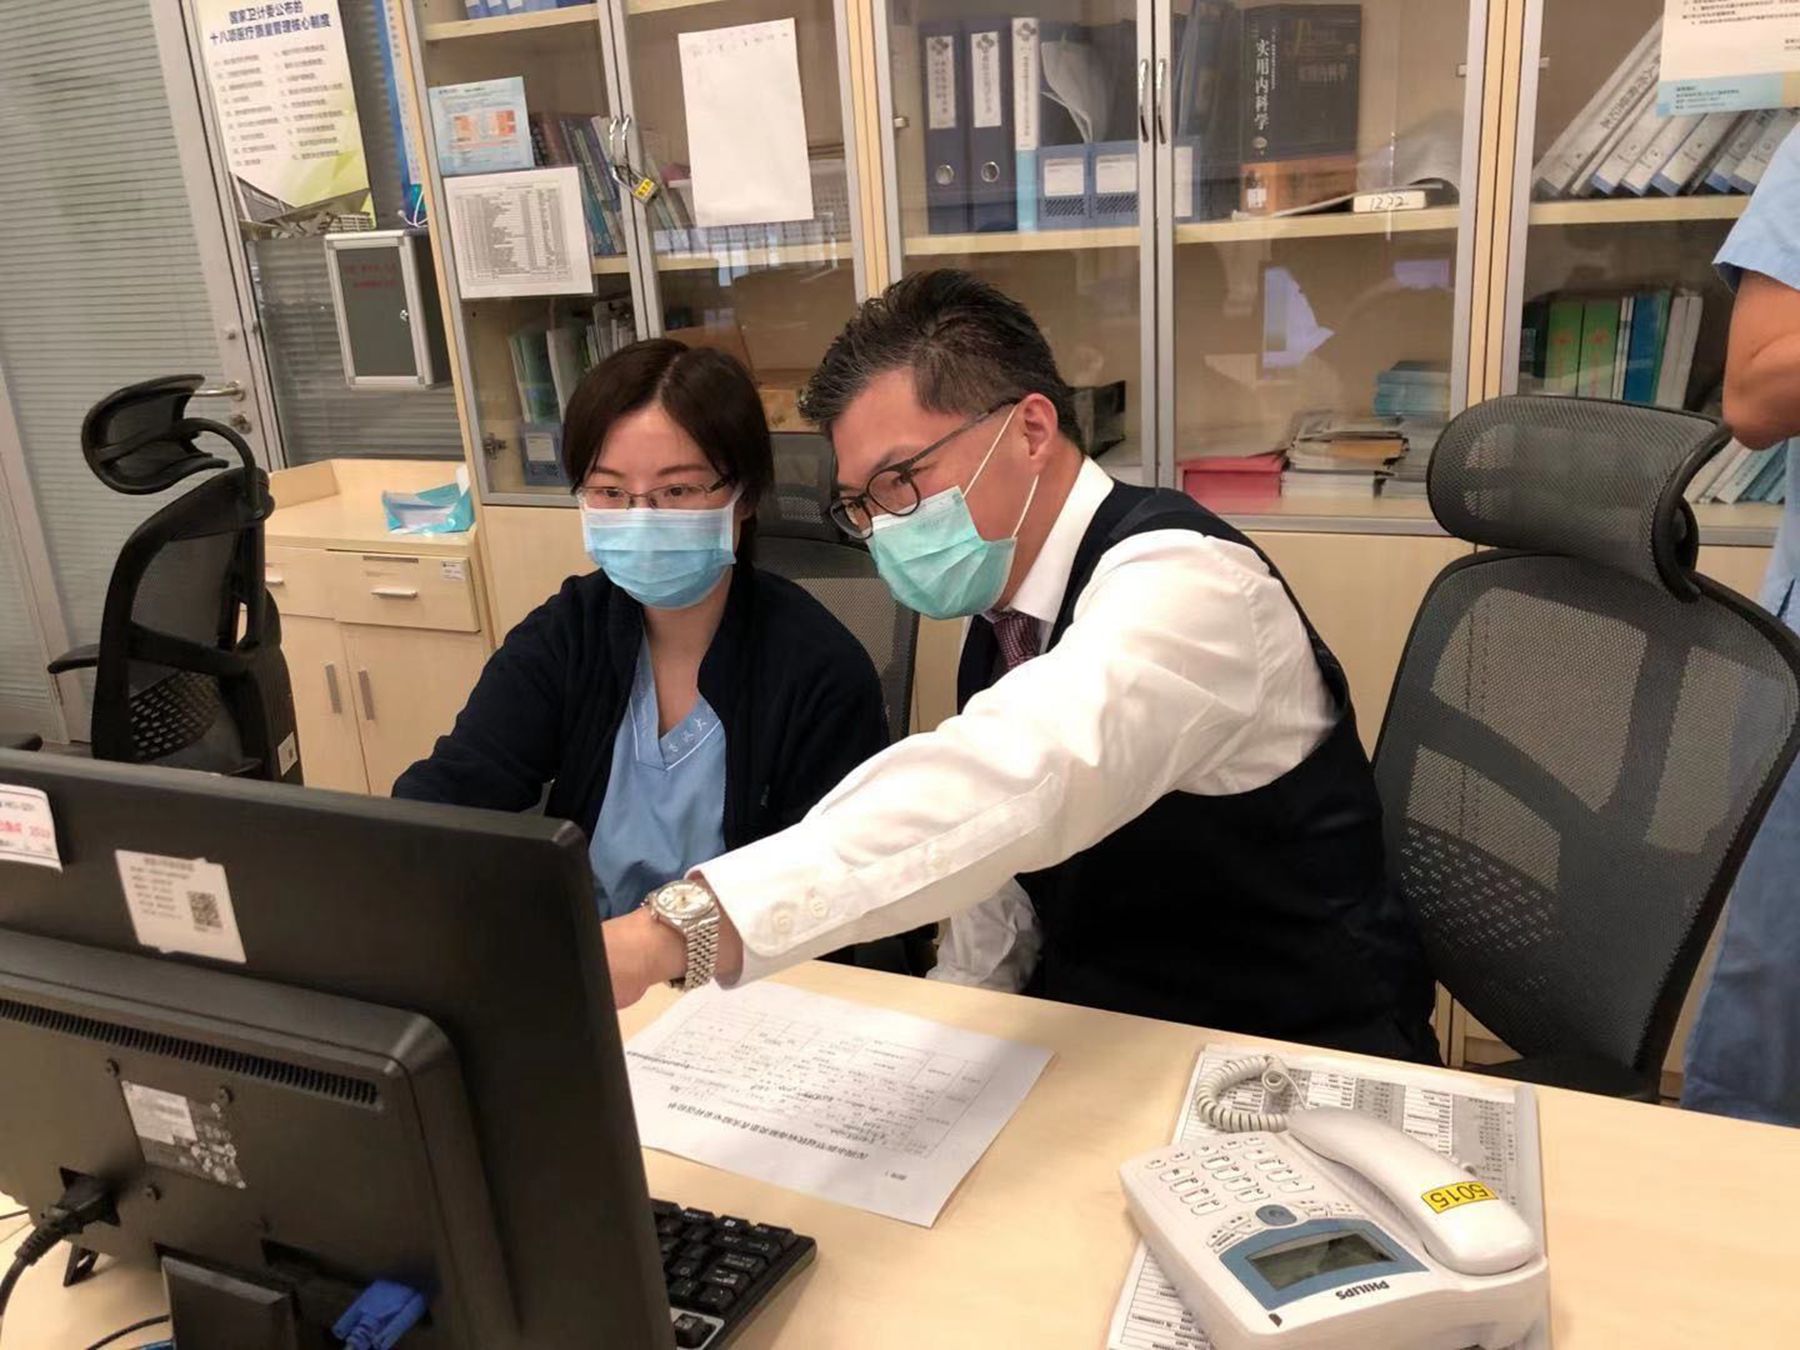  許建名醫生]右一^和同事忙碌在臨床工作中 港大深圳醫院供圖